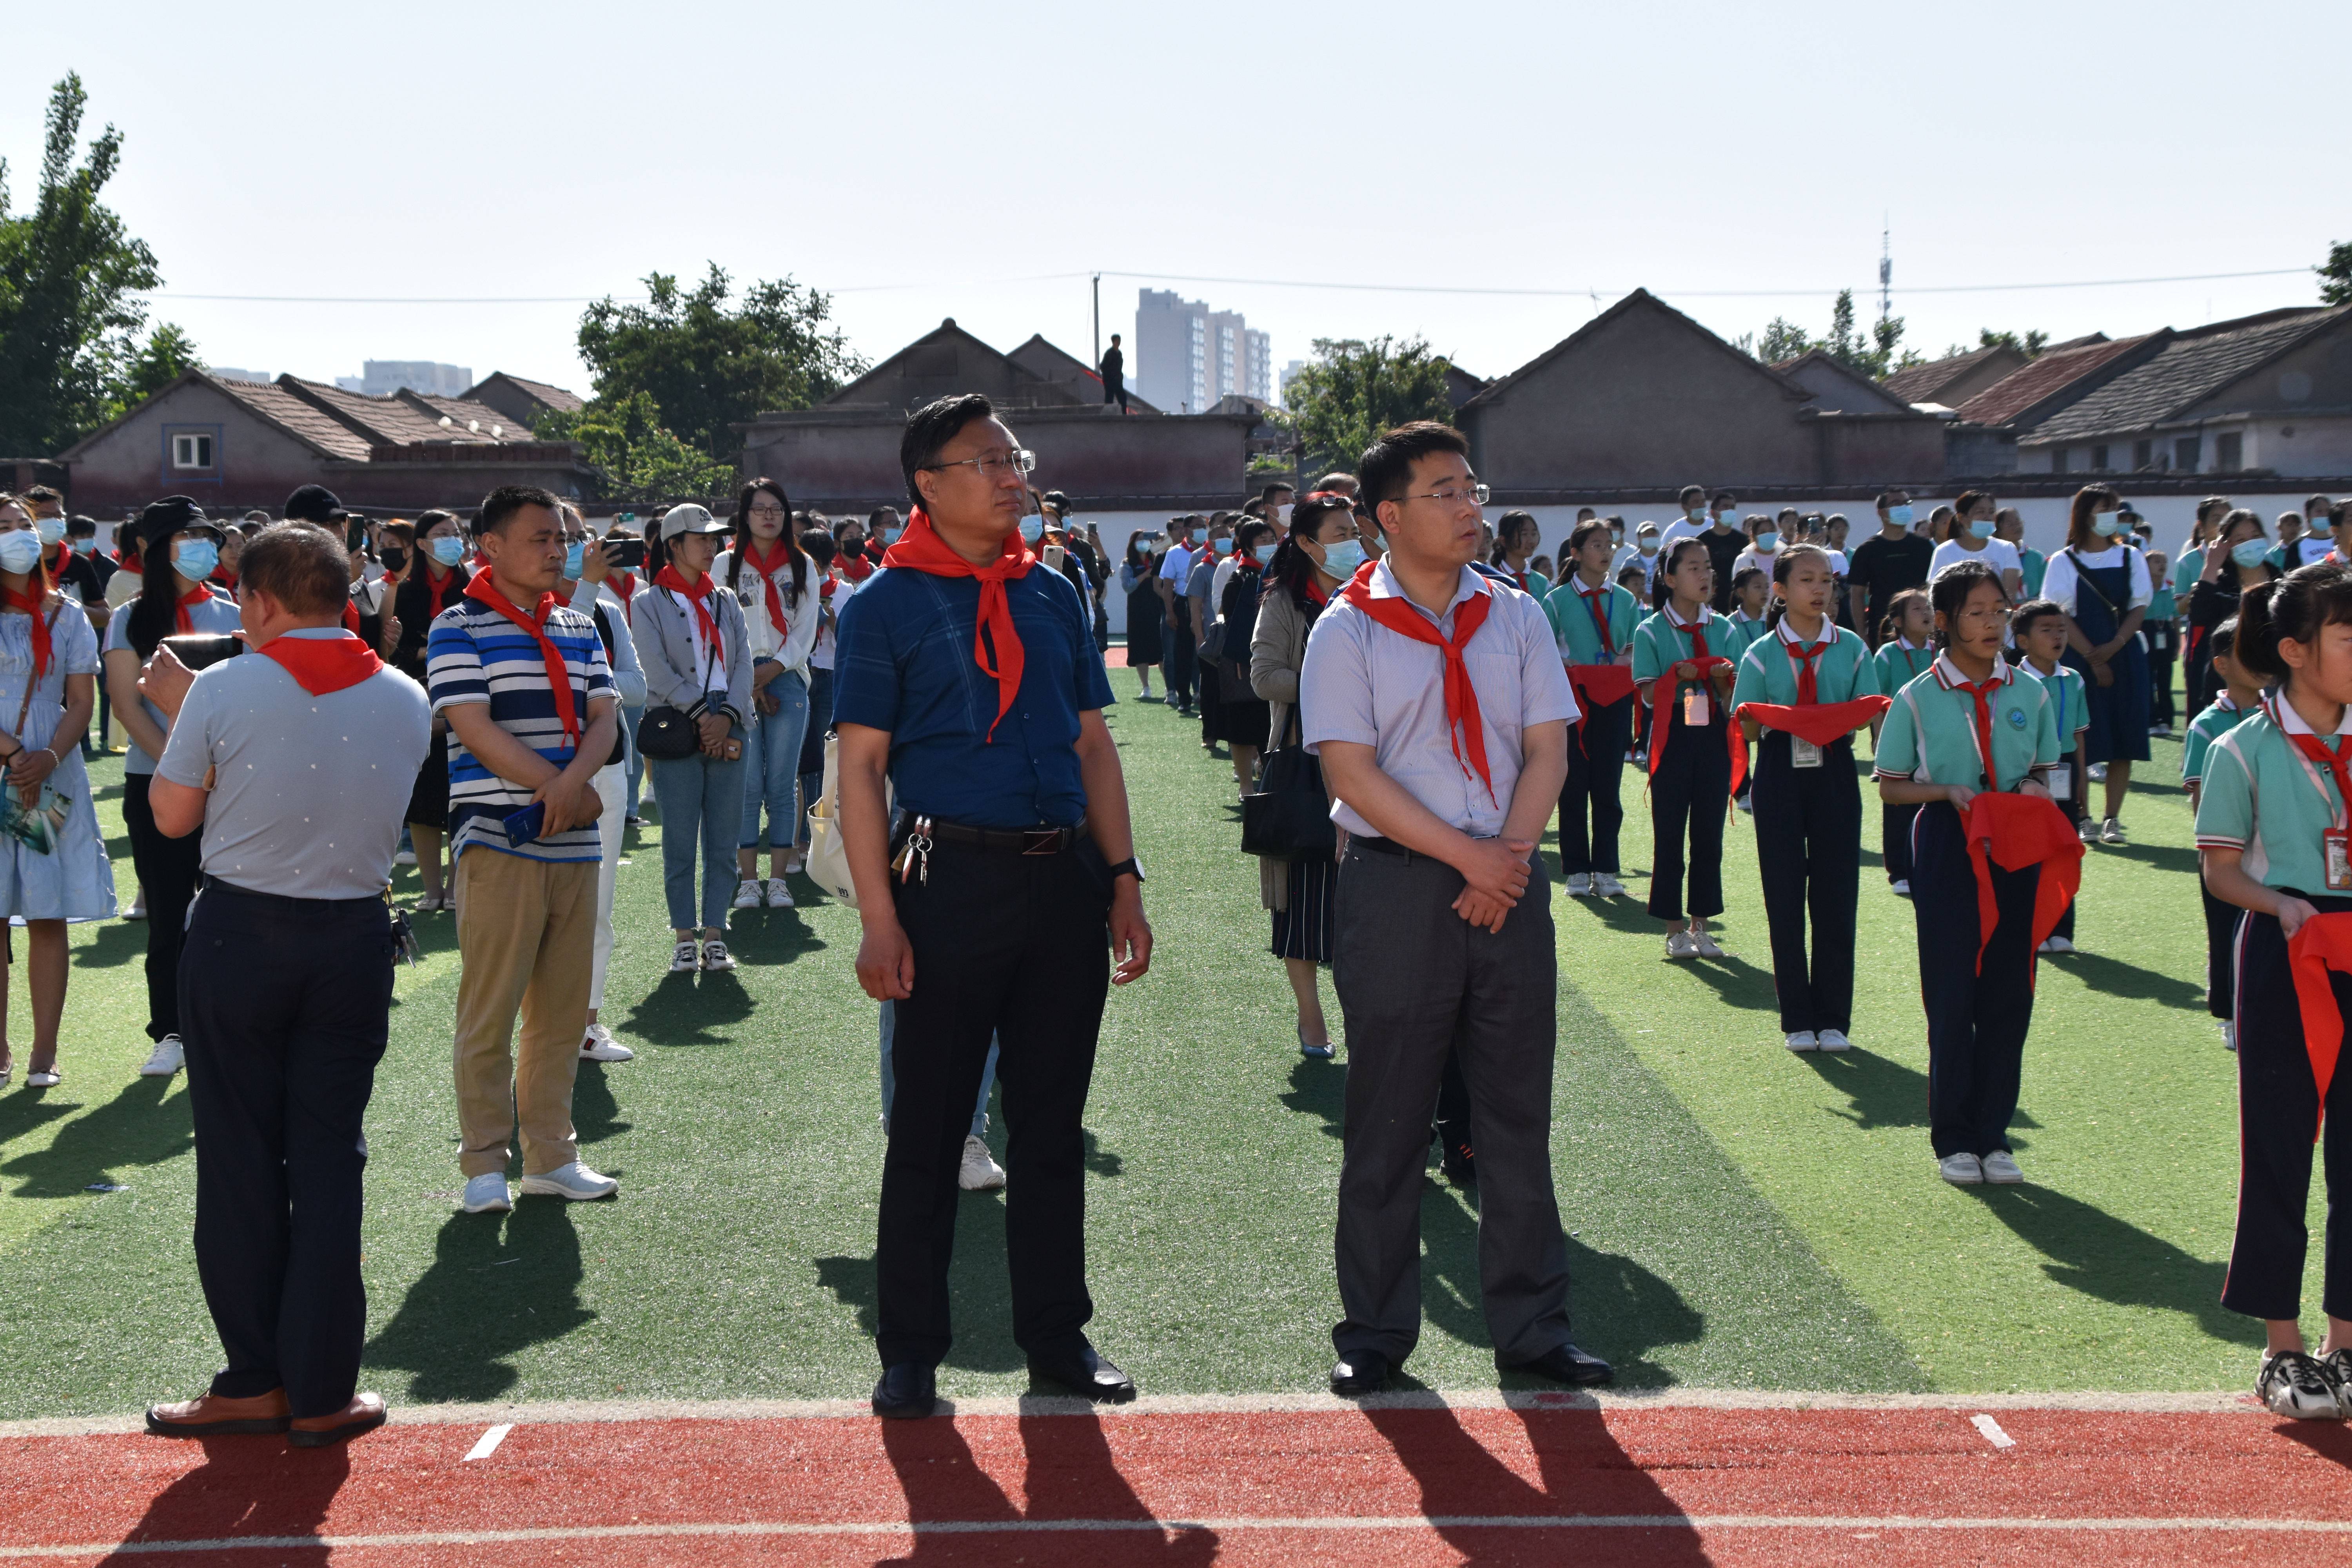 沂水县第二实验中学隆重举办新队员入队仪式暨分批入队示范活动